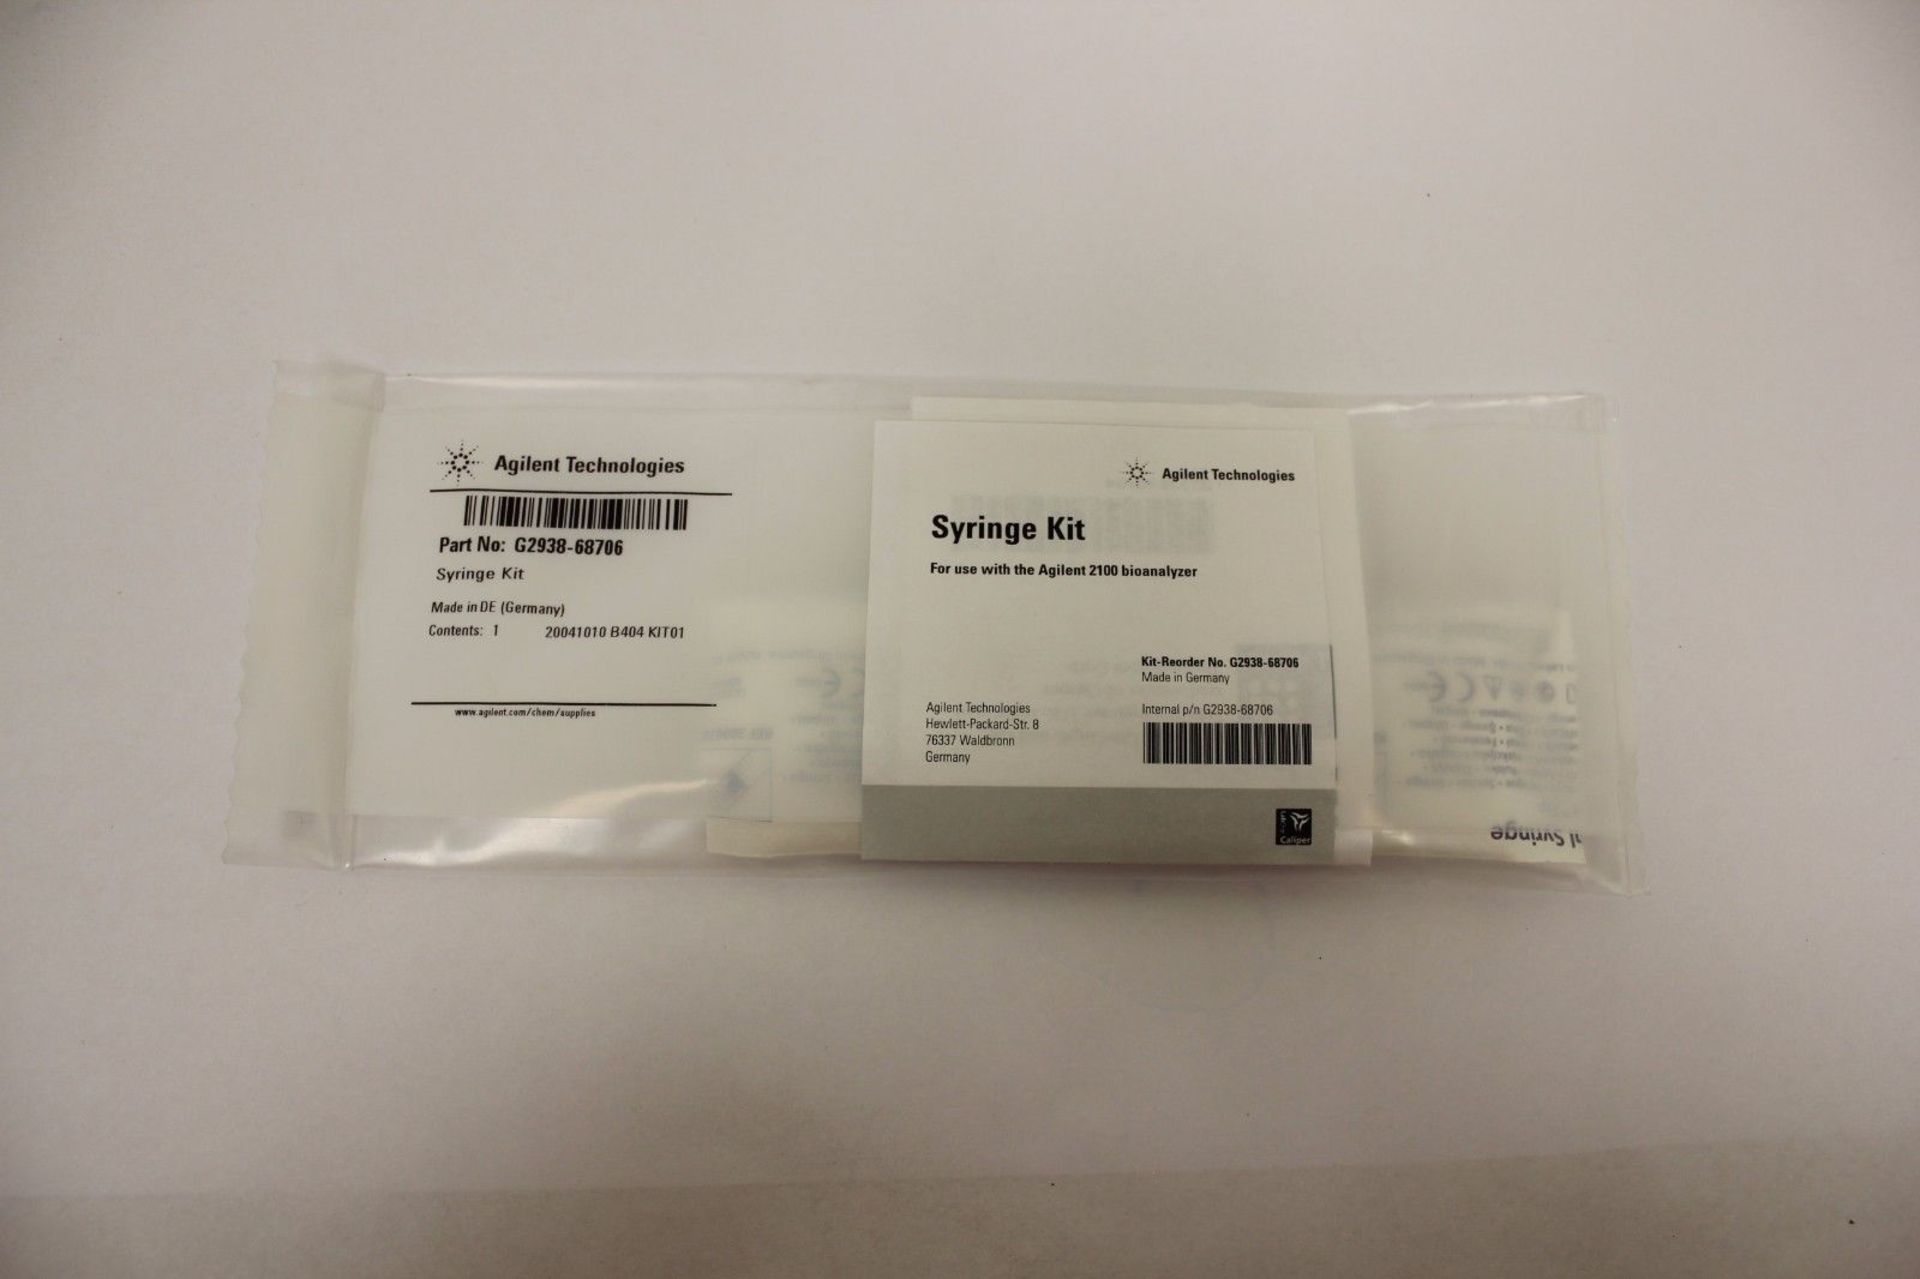 Lot 5 Agilent Syringe Kit G2938-68706 For 2100 Bioanalyzer - Image 2 of 3